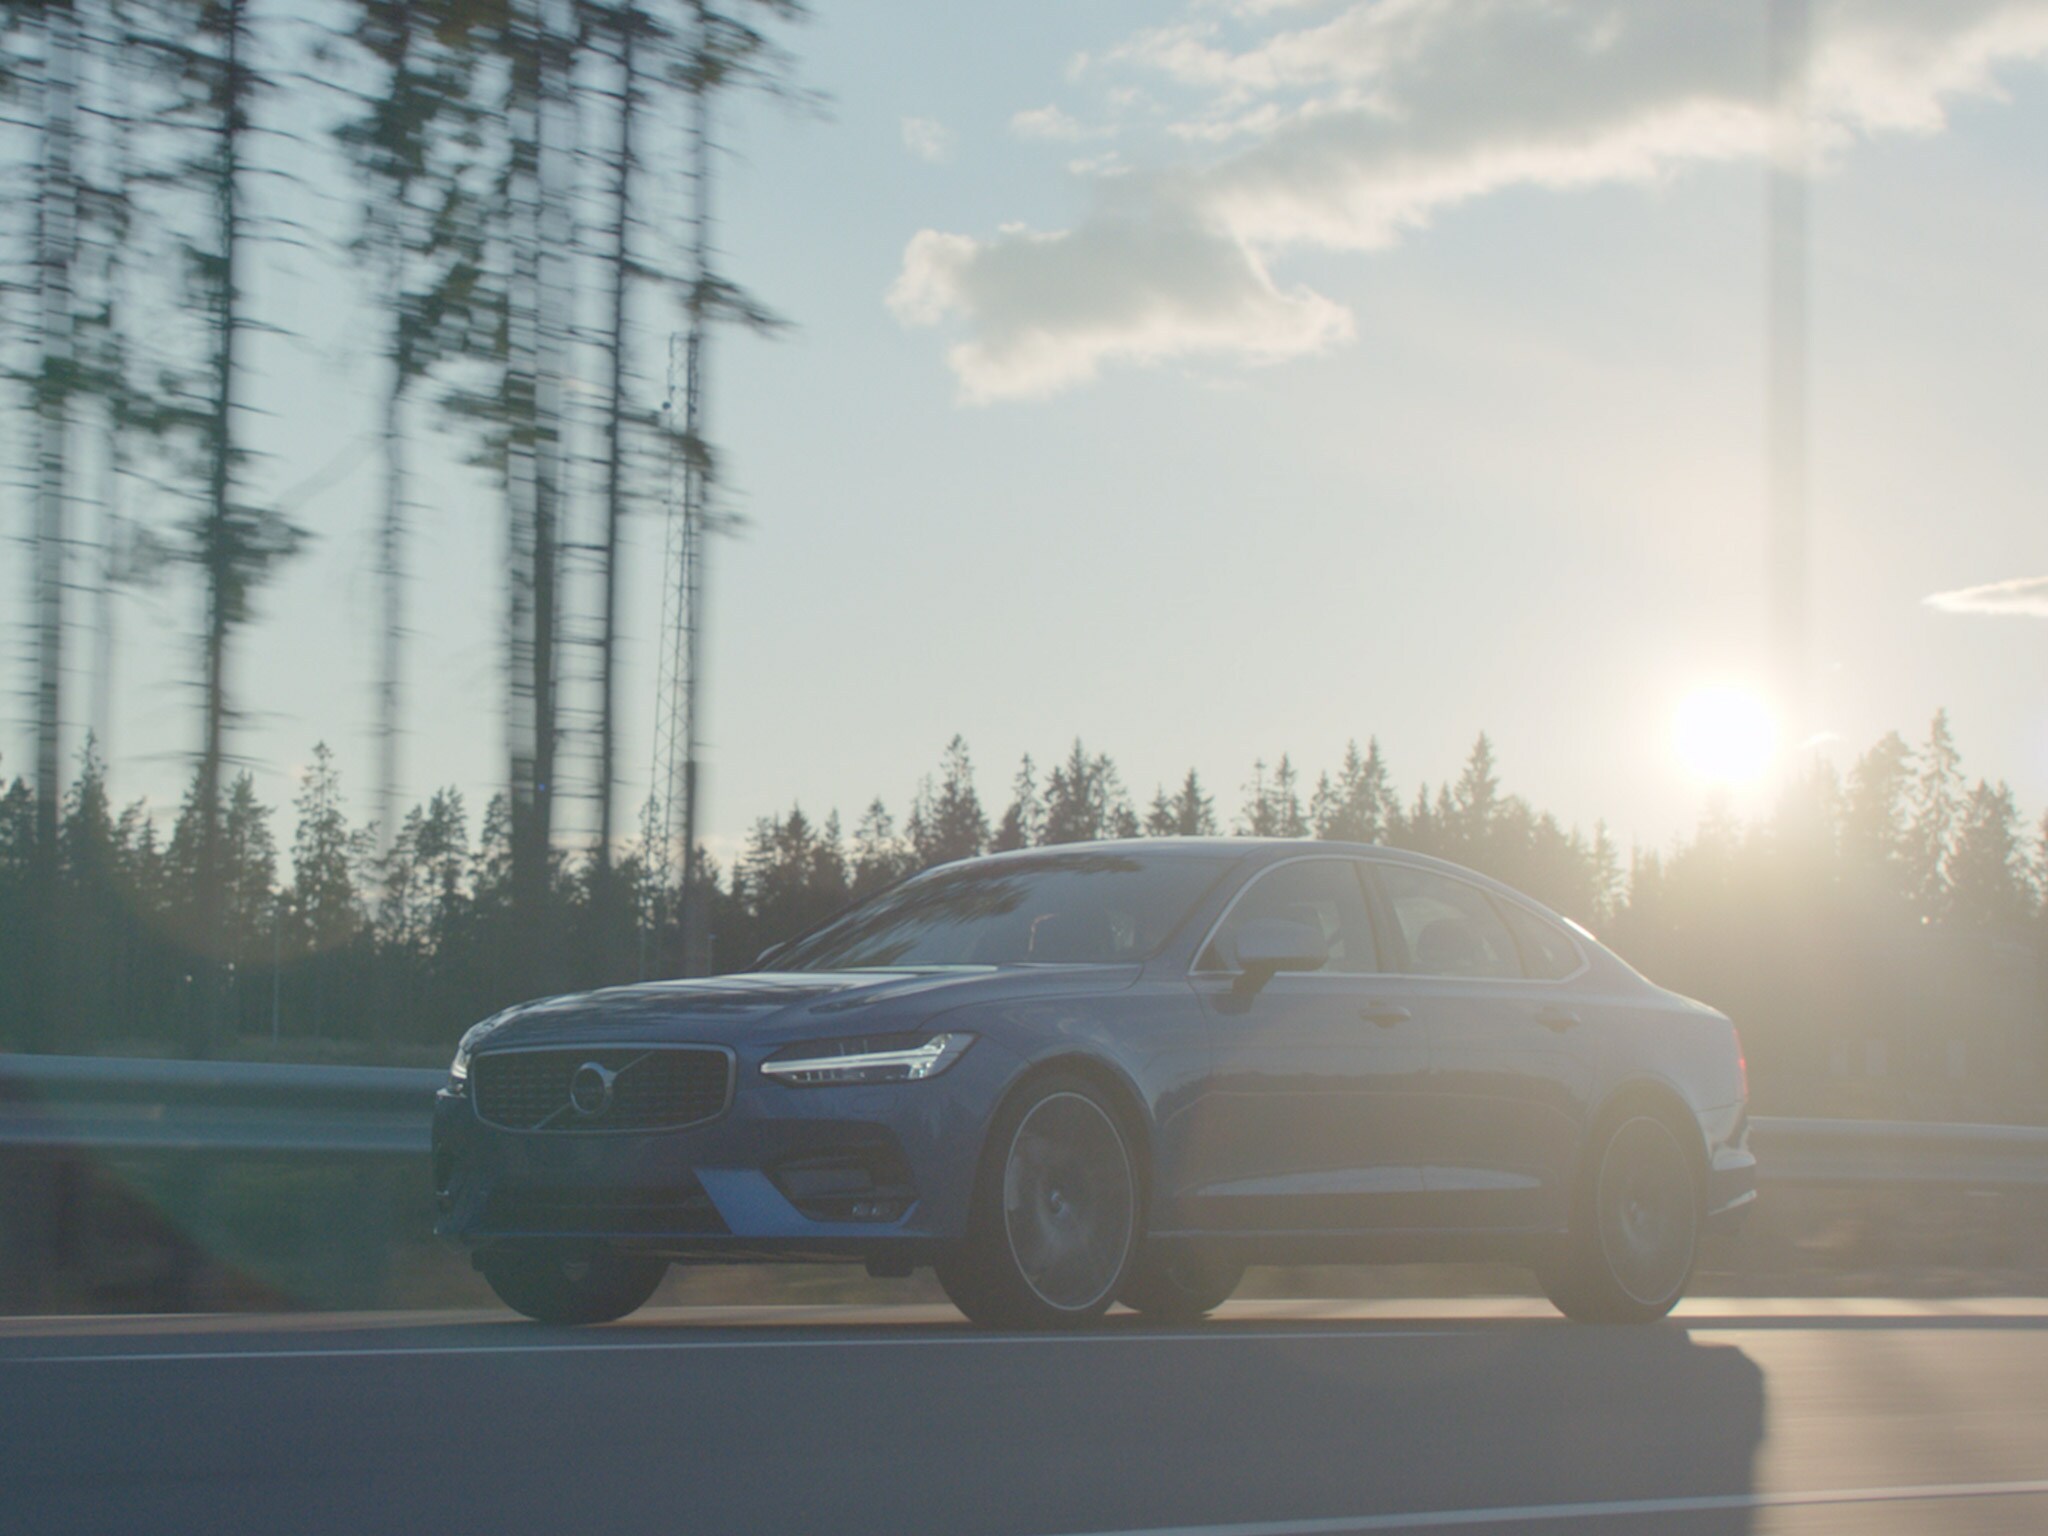 Denim kék Volvo S90 szedán nagylátószögű felvételen, amint egy napsütéses délutánon egy erdős úton halad.